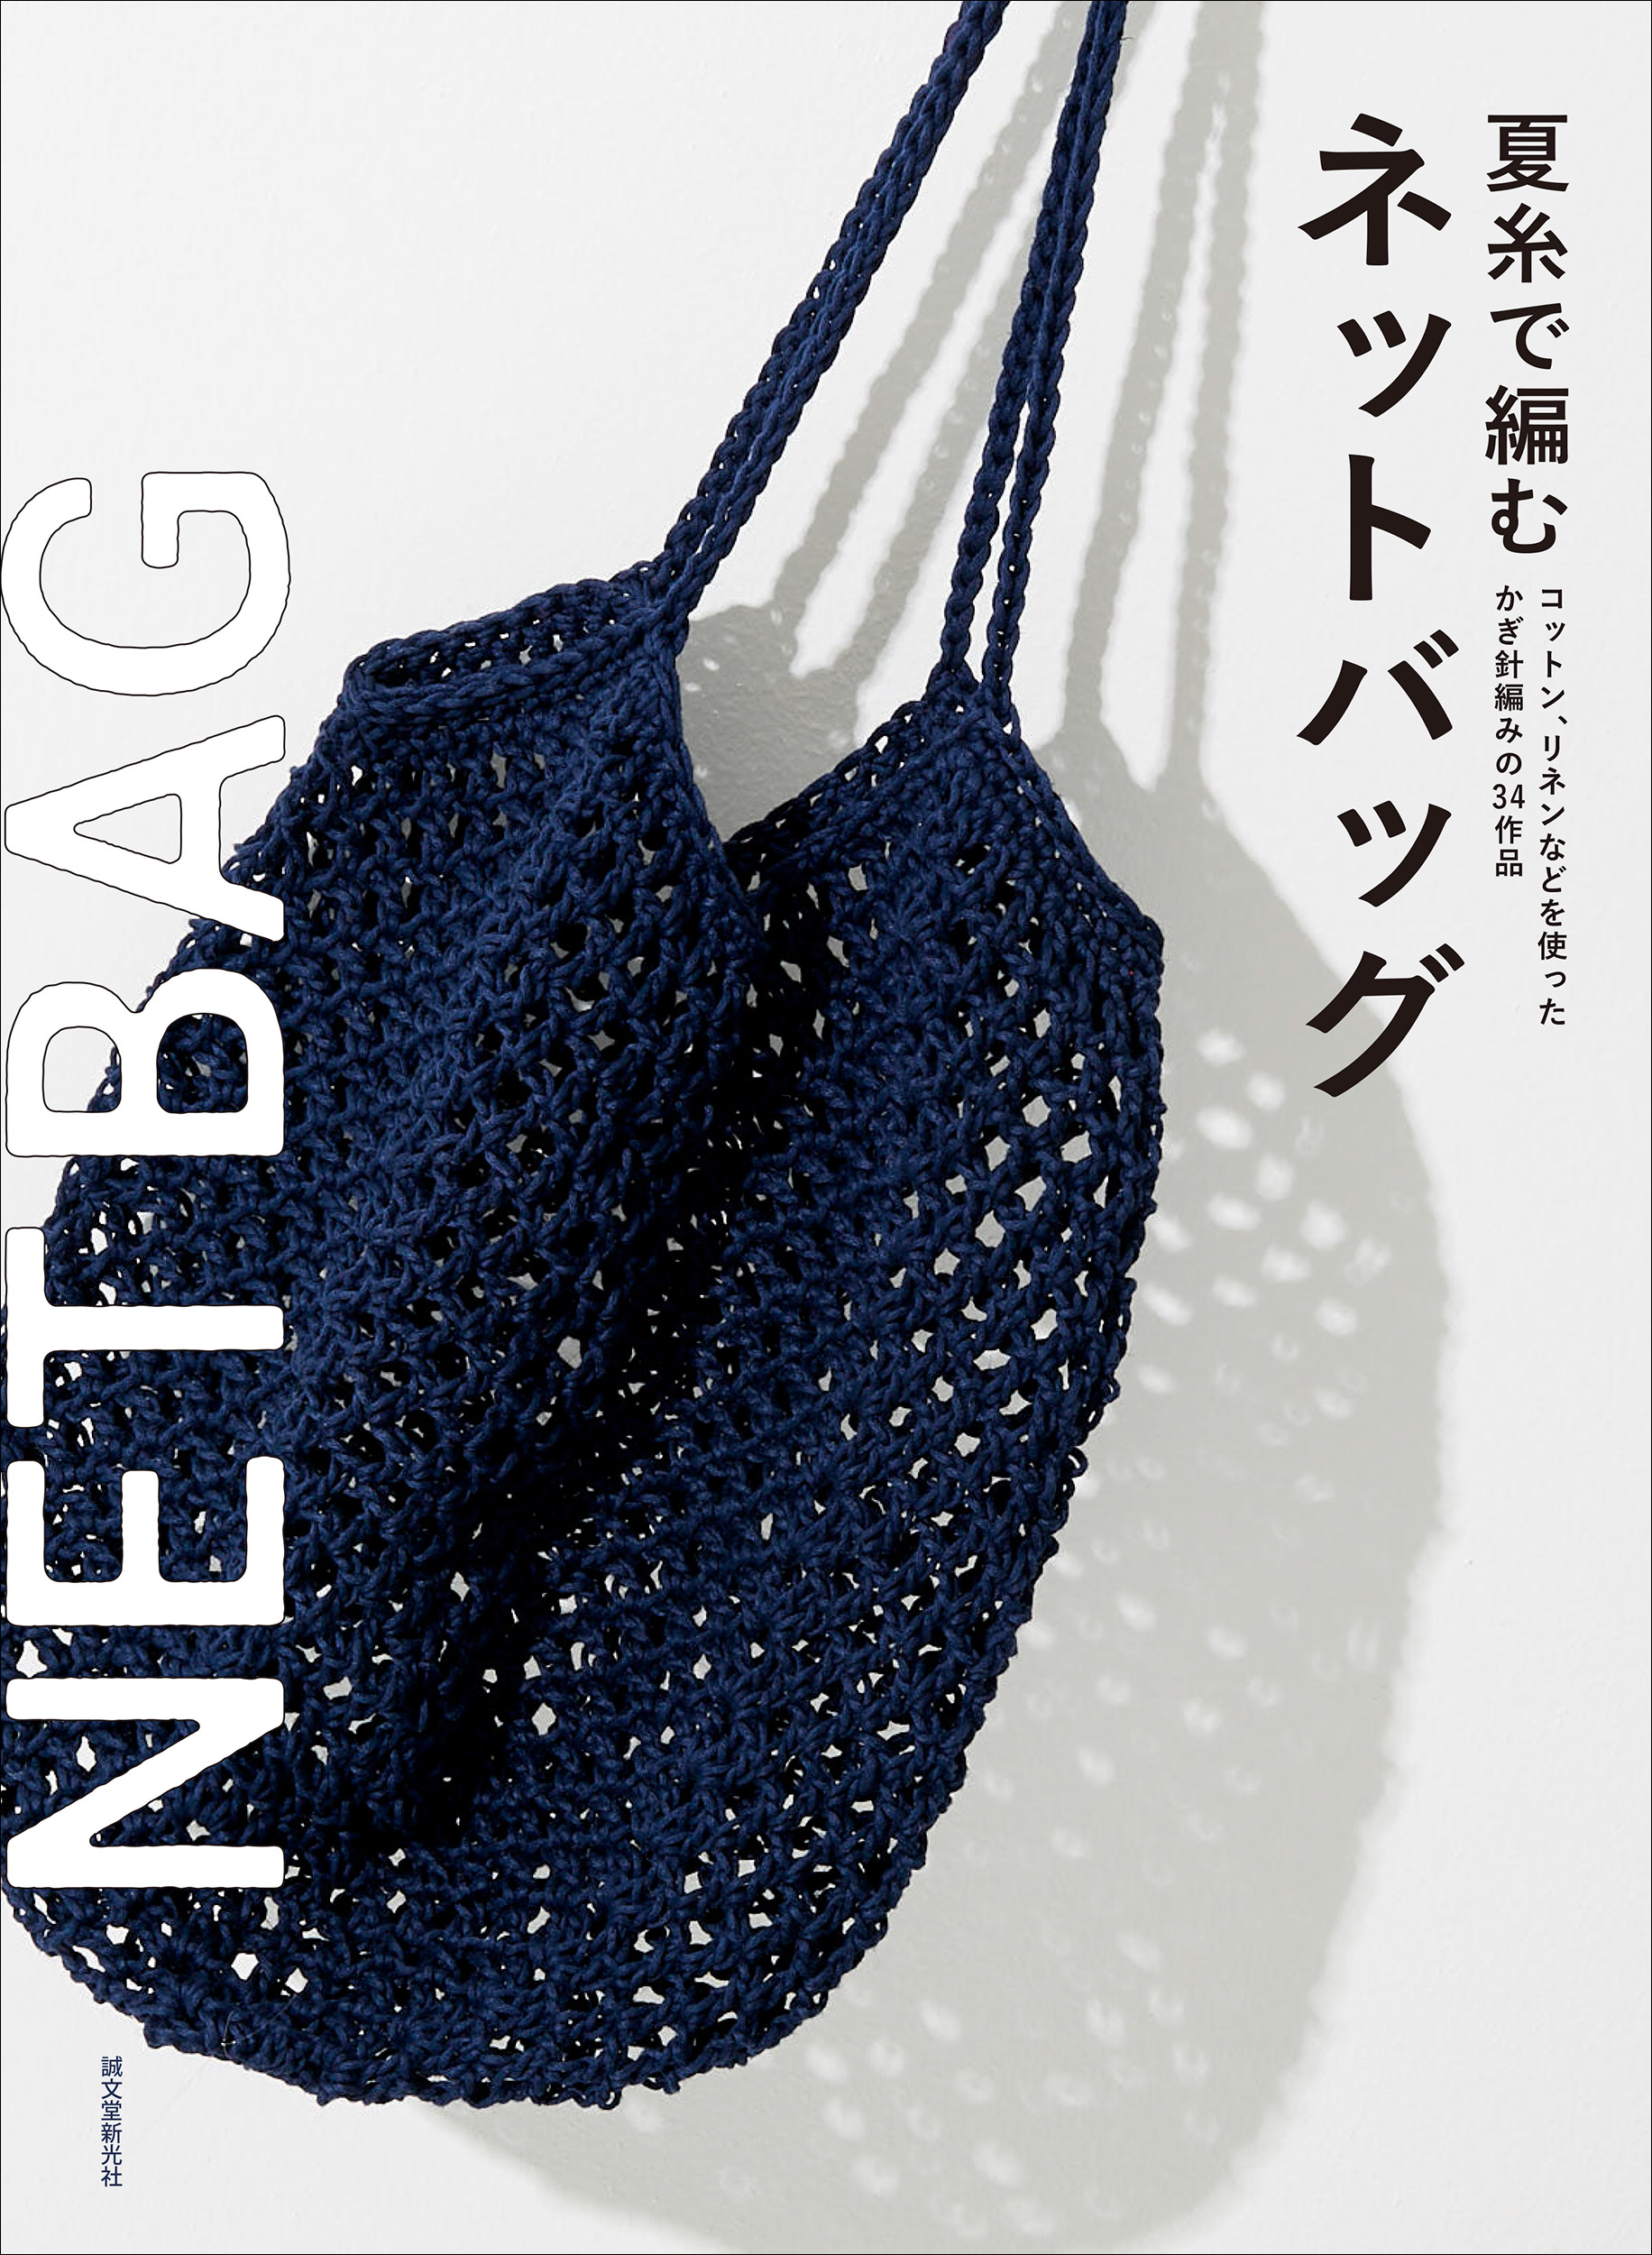 網状で透け感のある、涼しげなデザインが魅力！かぎ針編みで作るネットバッグの作り方。｜株式会社誠文堂新光社のプレスリリース